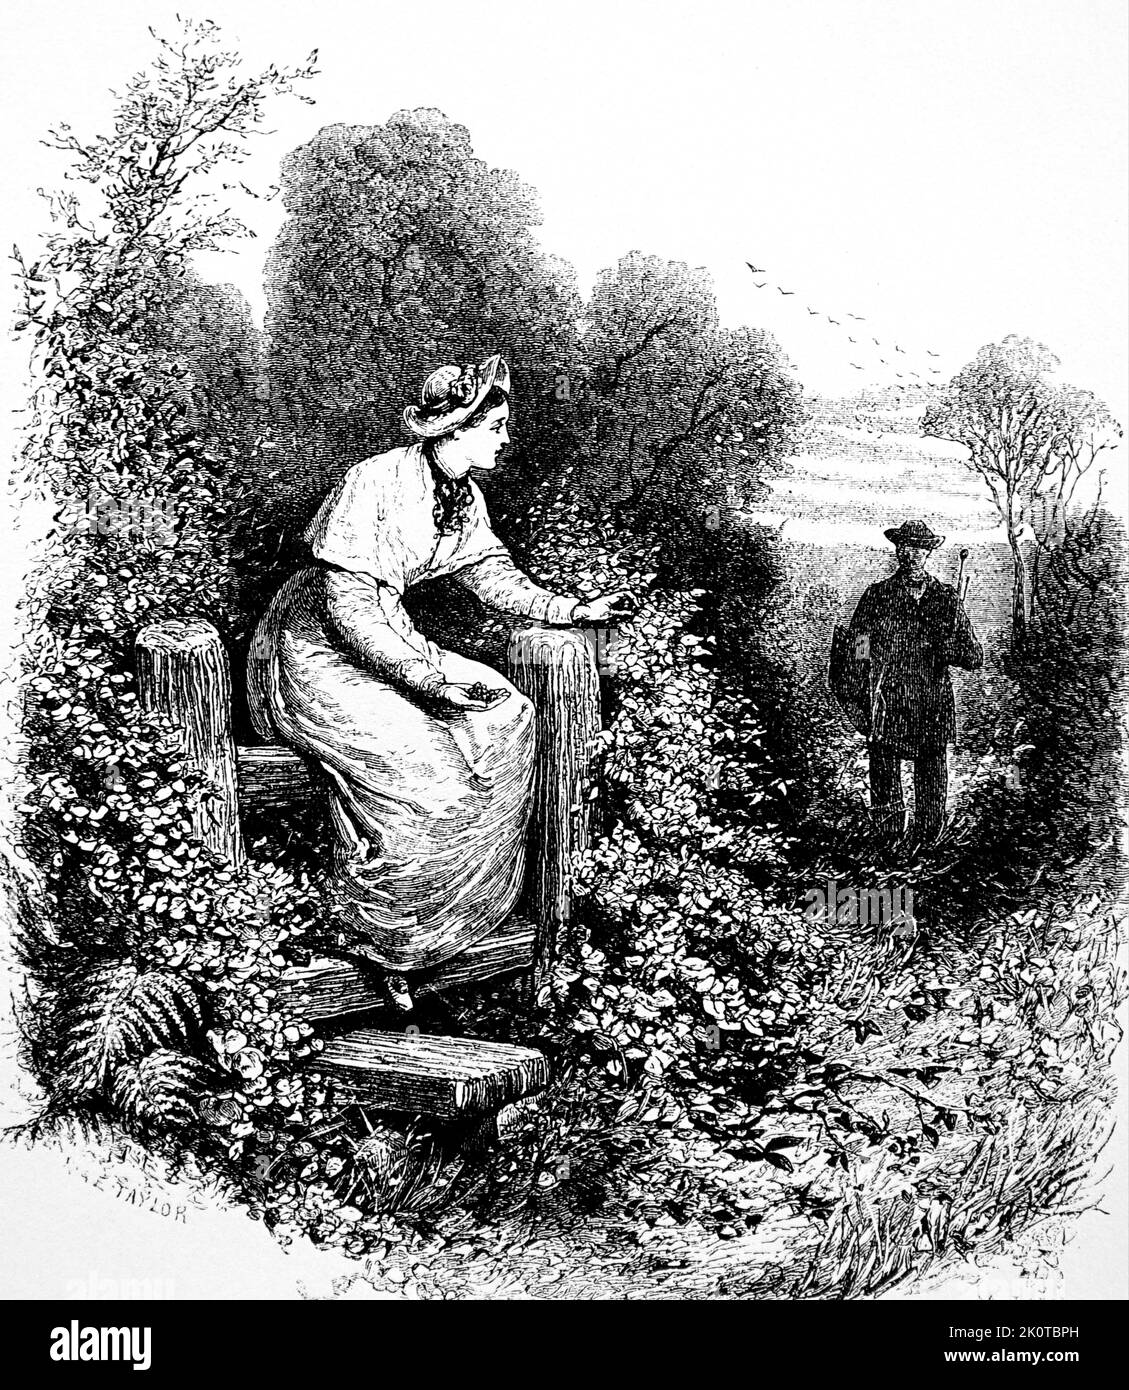 Illustration représentant une fille assise sur un stile, en attente de son amant. Daté du 19th siècle Banque D'Images